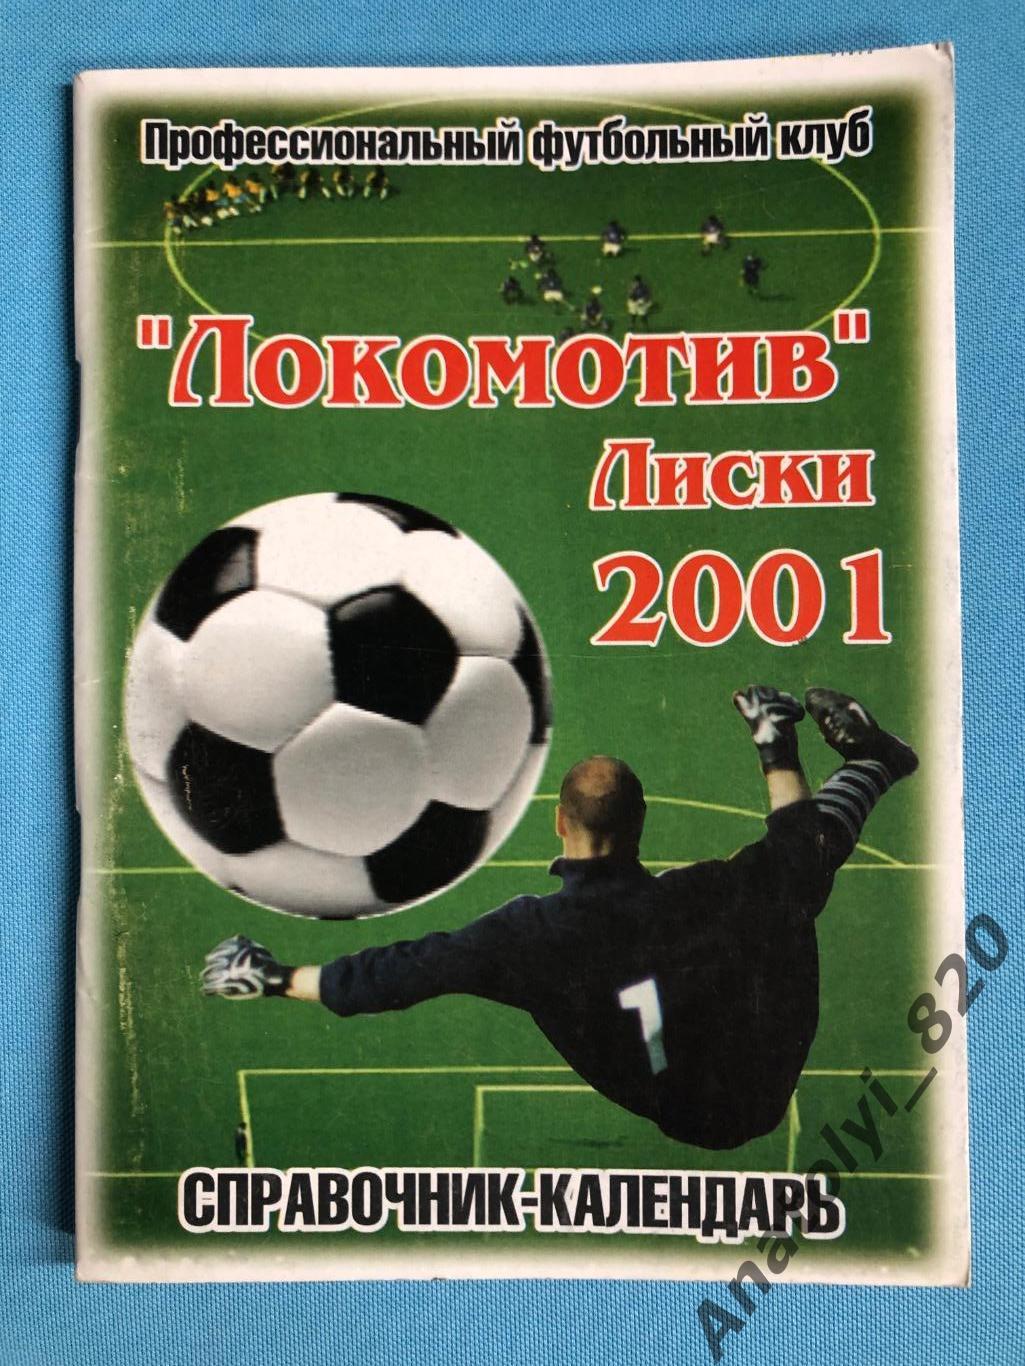 Лиски 2001 год календарь - справочник